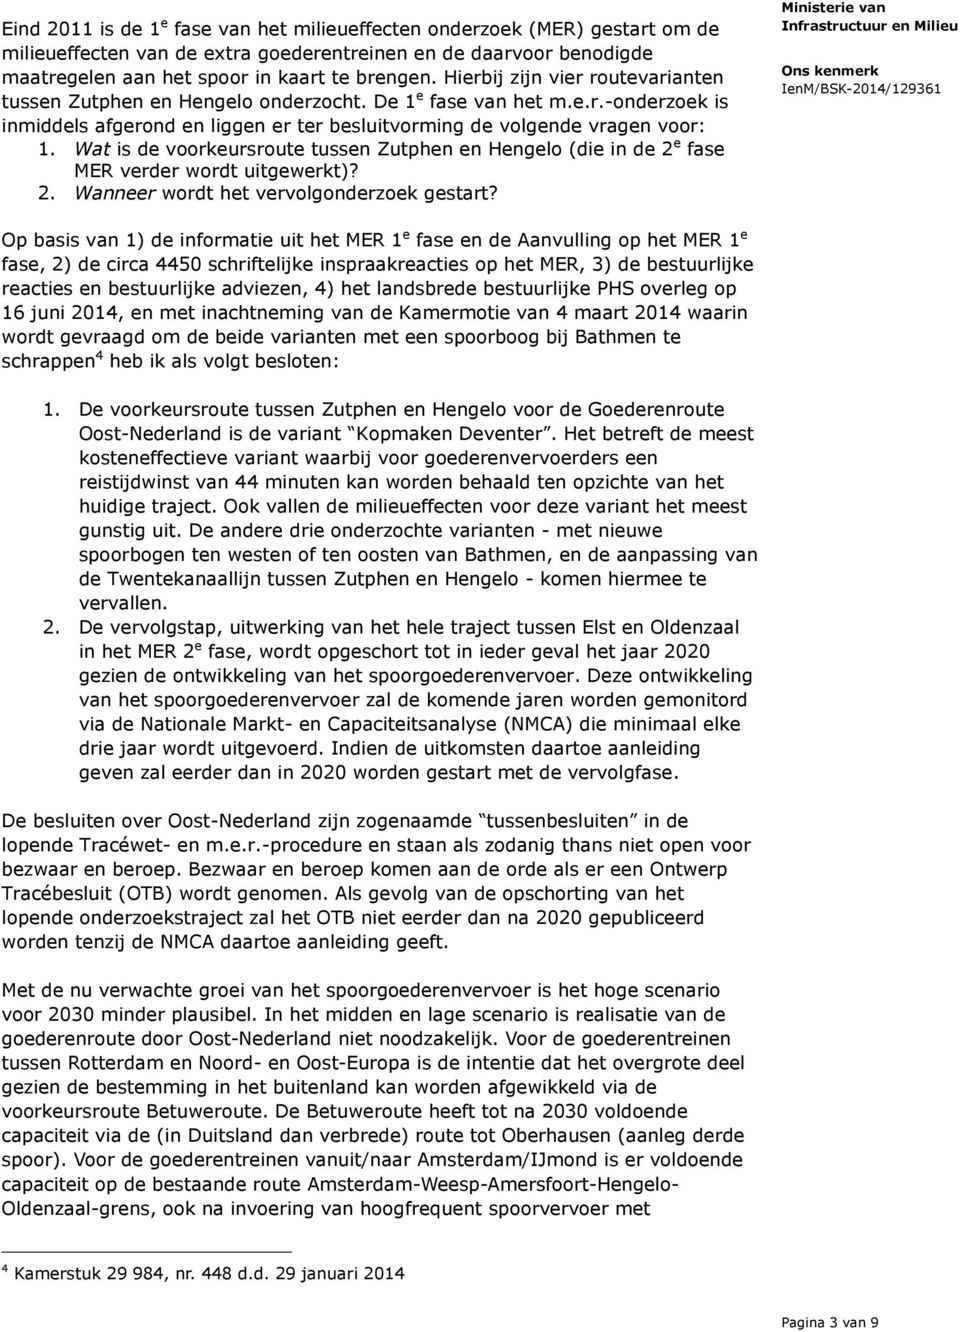 Wat is de voorkeursroute tussen Zutphen en Hengelo (die in de 2 e fase MER verder wordt uitgewerkt)? 2. Wanneer wordt het vervolgonderzoek gestart?